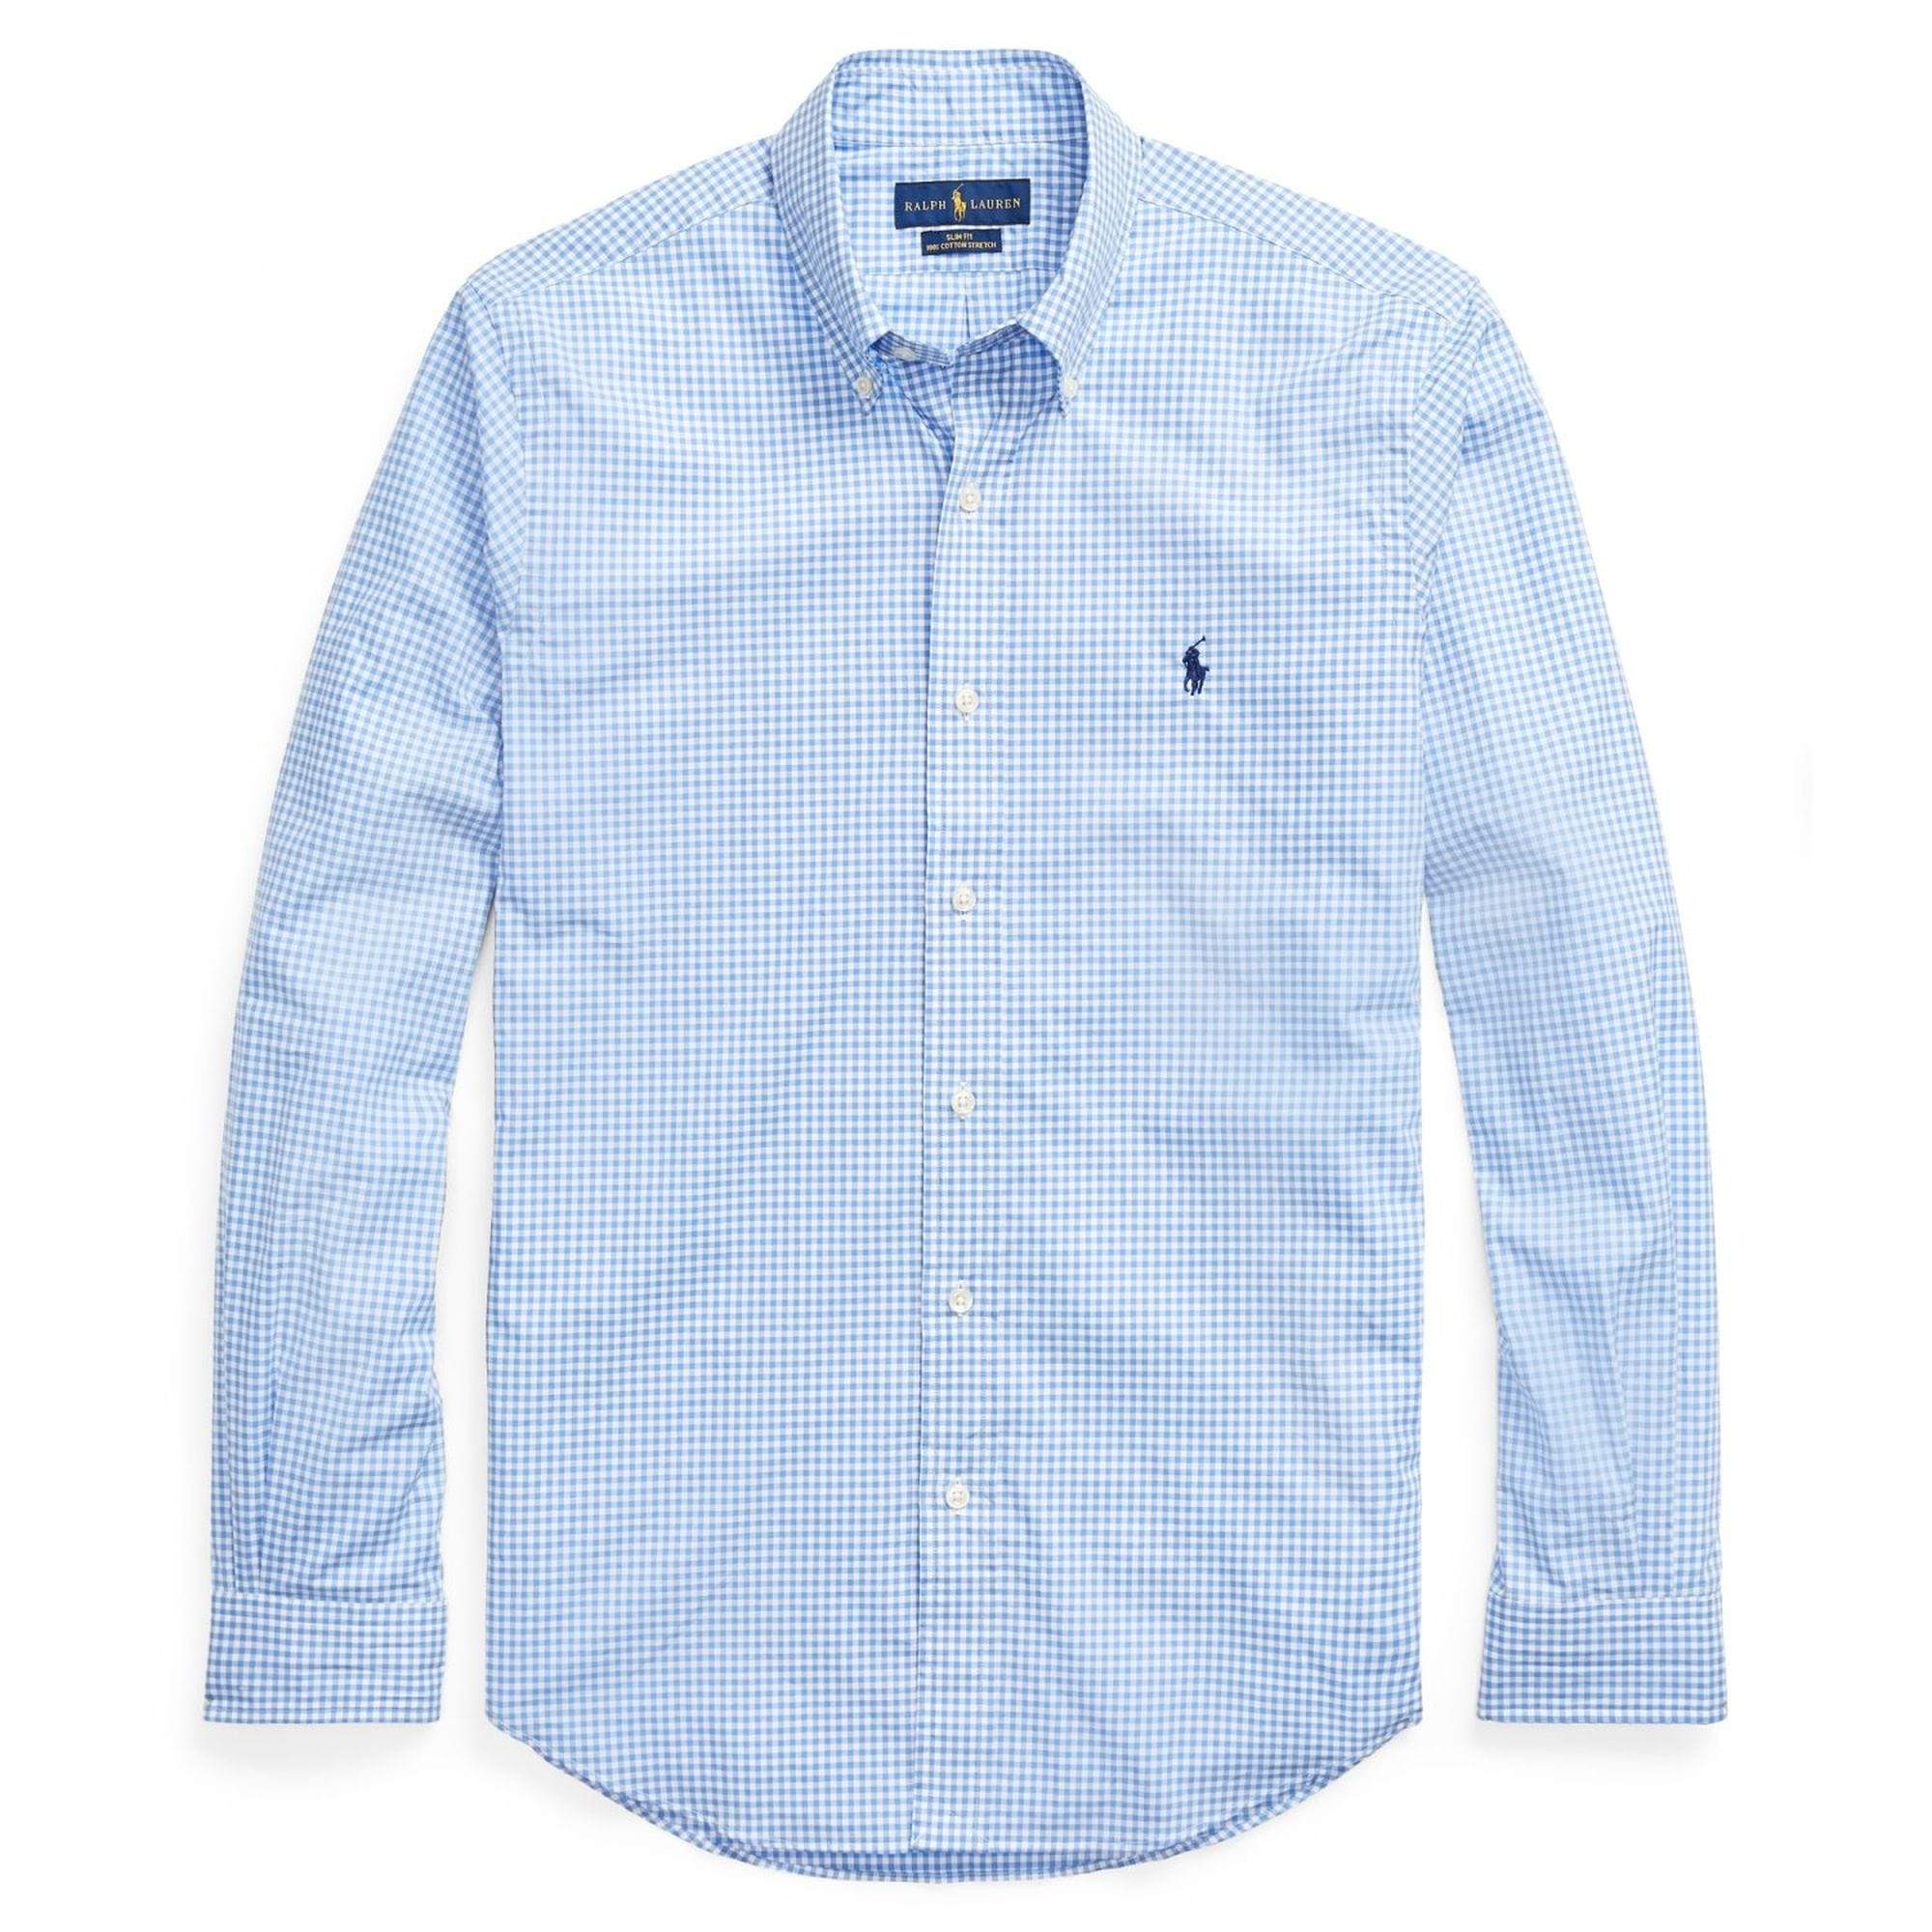 Polo Ralph Lauren - Shirts - Polo Ralph Lauren Blue Poplin Plaid Shirt